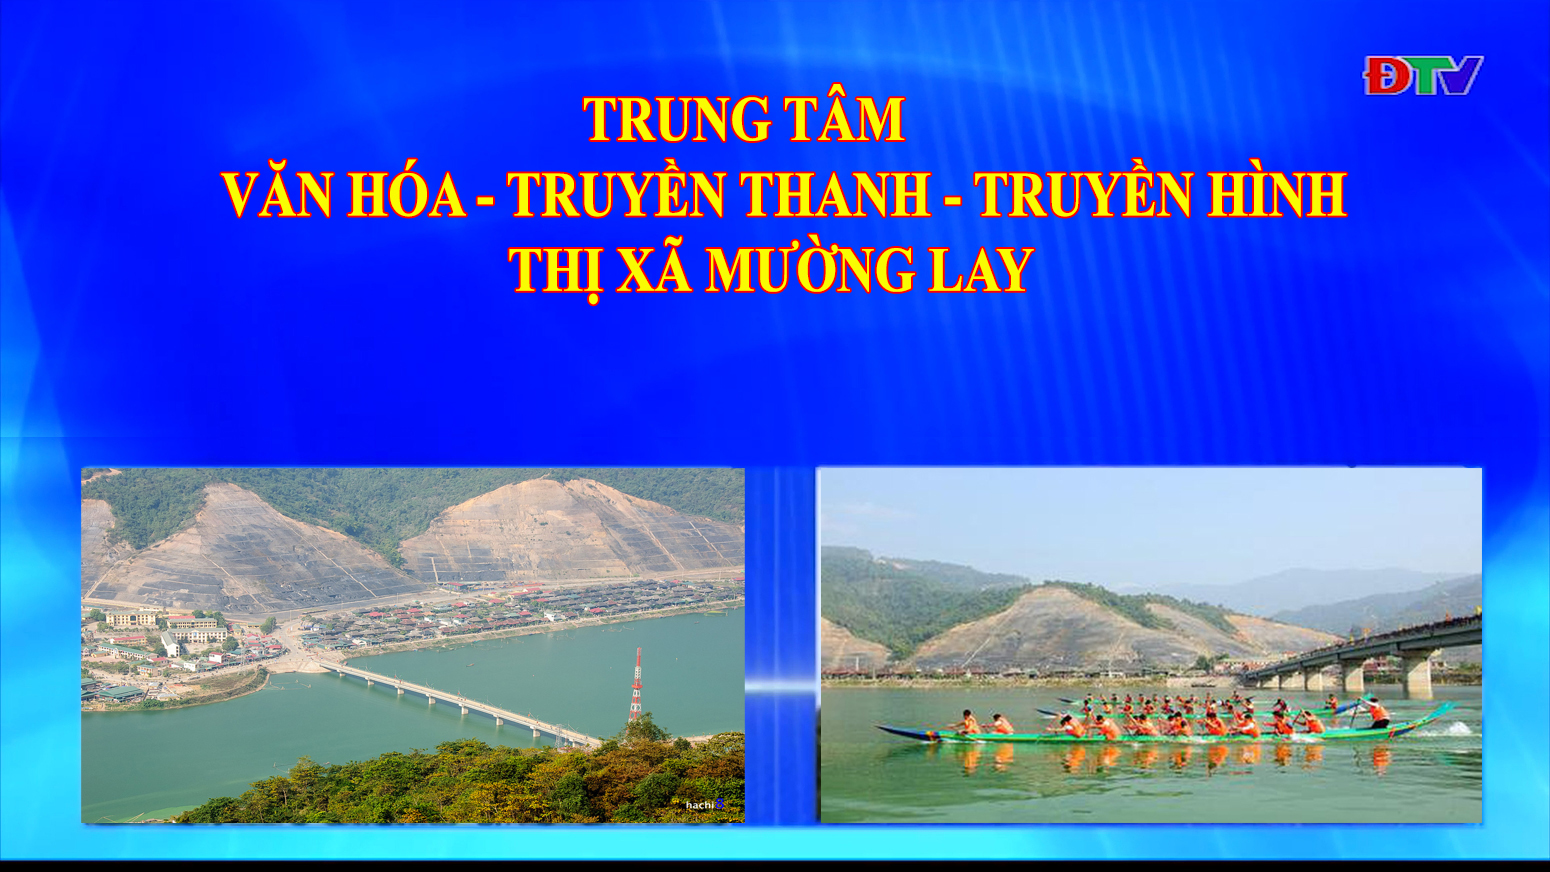 Trung tâm VH-TTTH thị xã Mường Lay (Ngày 3-6-2022)